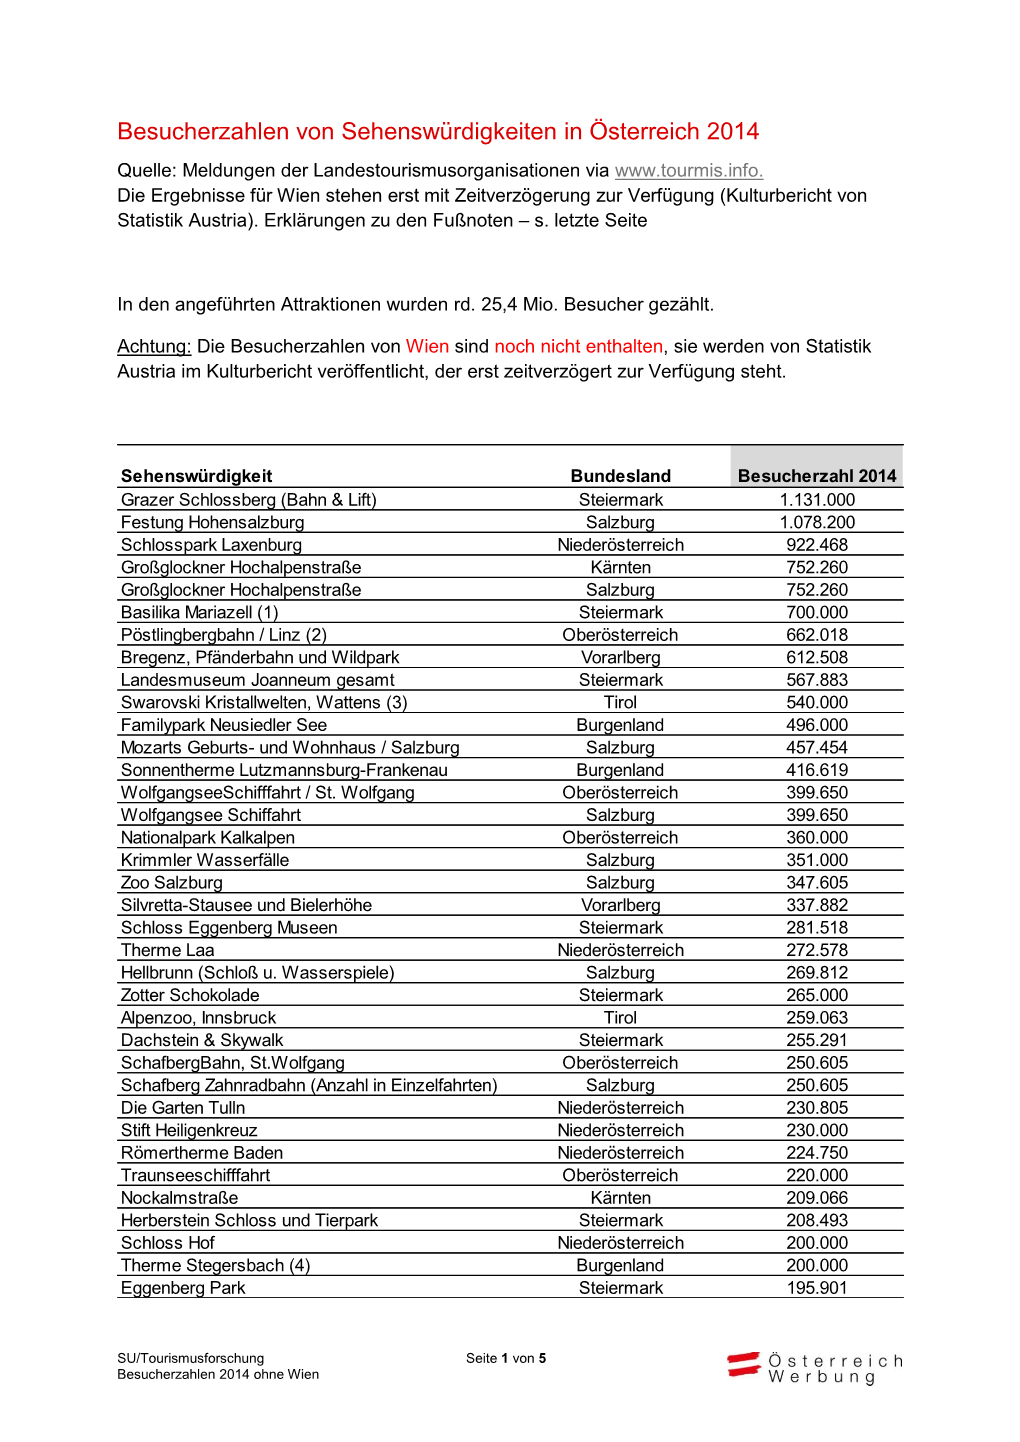 Besucherzahlen Von Sehenswürdigkeiten in Österreich 2014 Quelle: Meldungen Der Landestourismusorganisationen Via